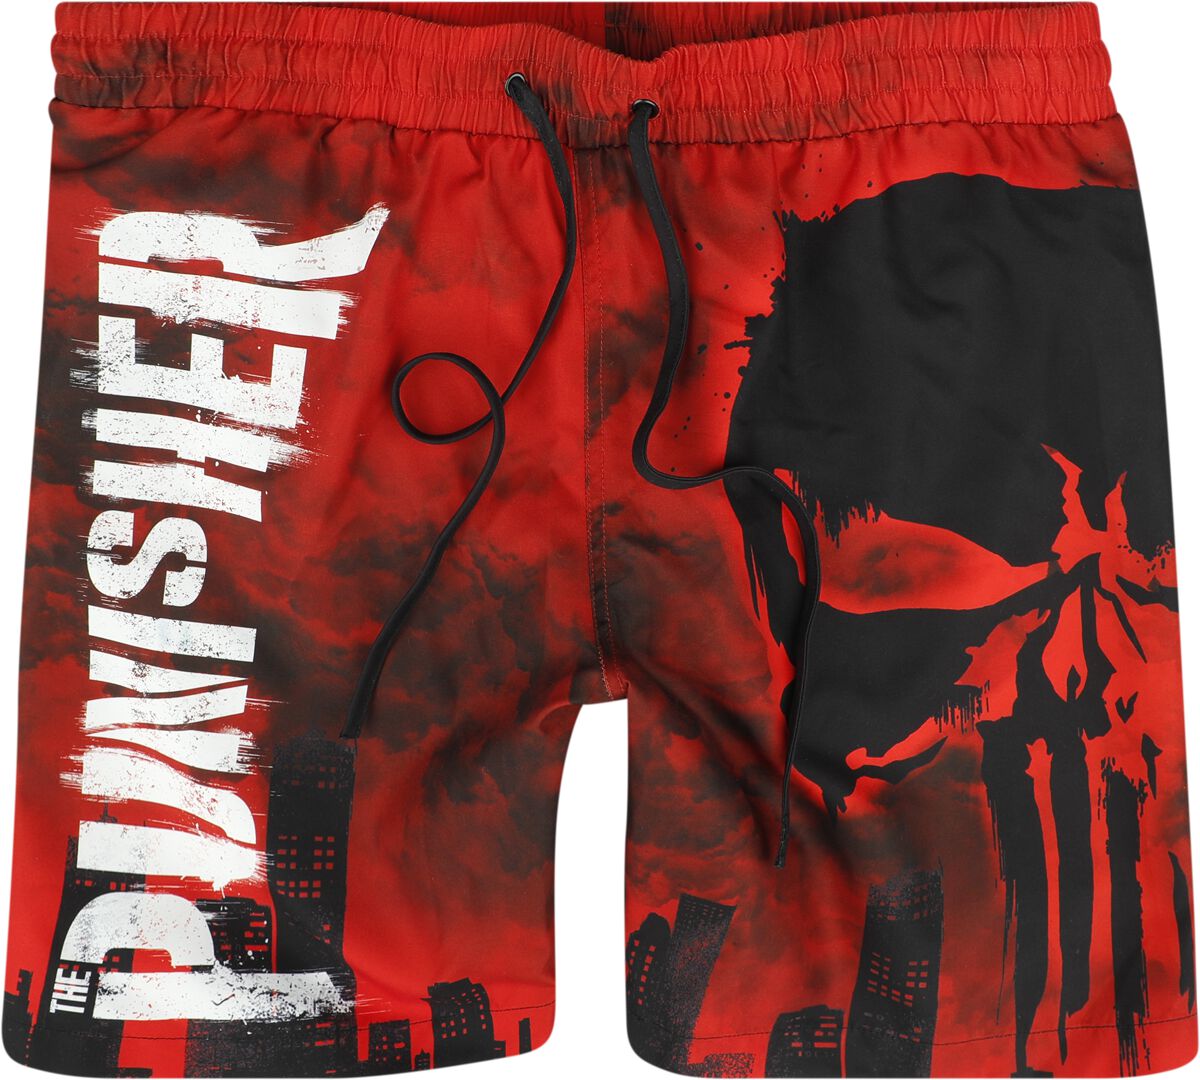 The Punisher - Marvel Badeshort - Skull - Red Desaster - S bis XXL - für Männer - Größe S - multicolor  - EMP exklusives Merchandise!